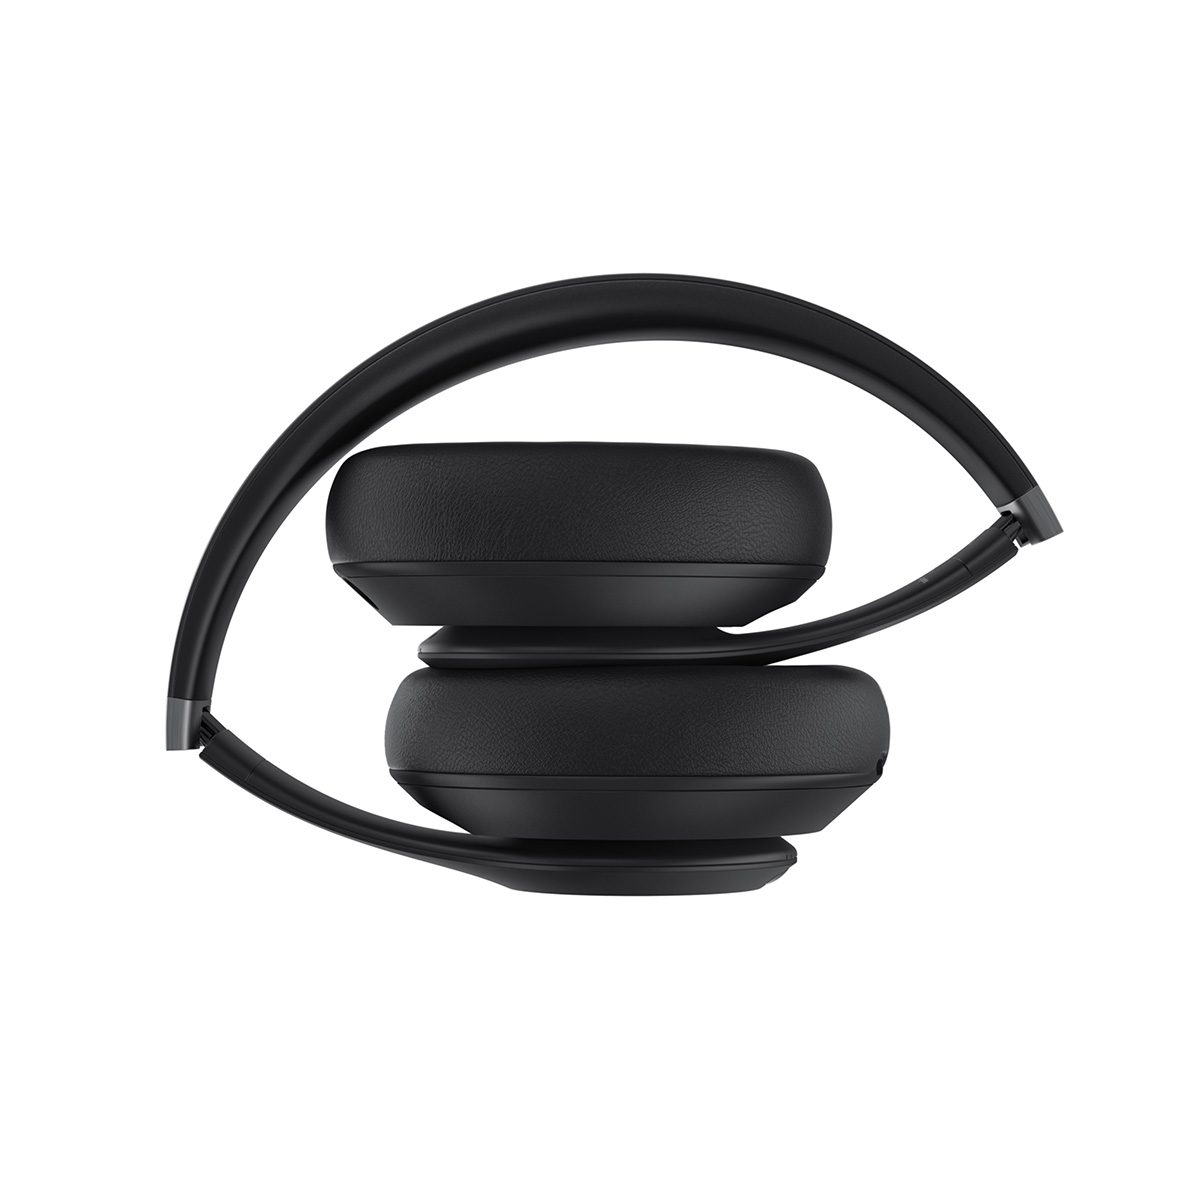 Studio Pro Premium Wireless Noise Cancelling Headphones